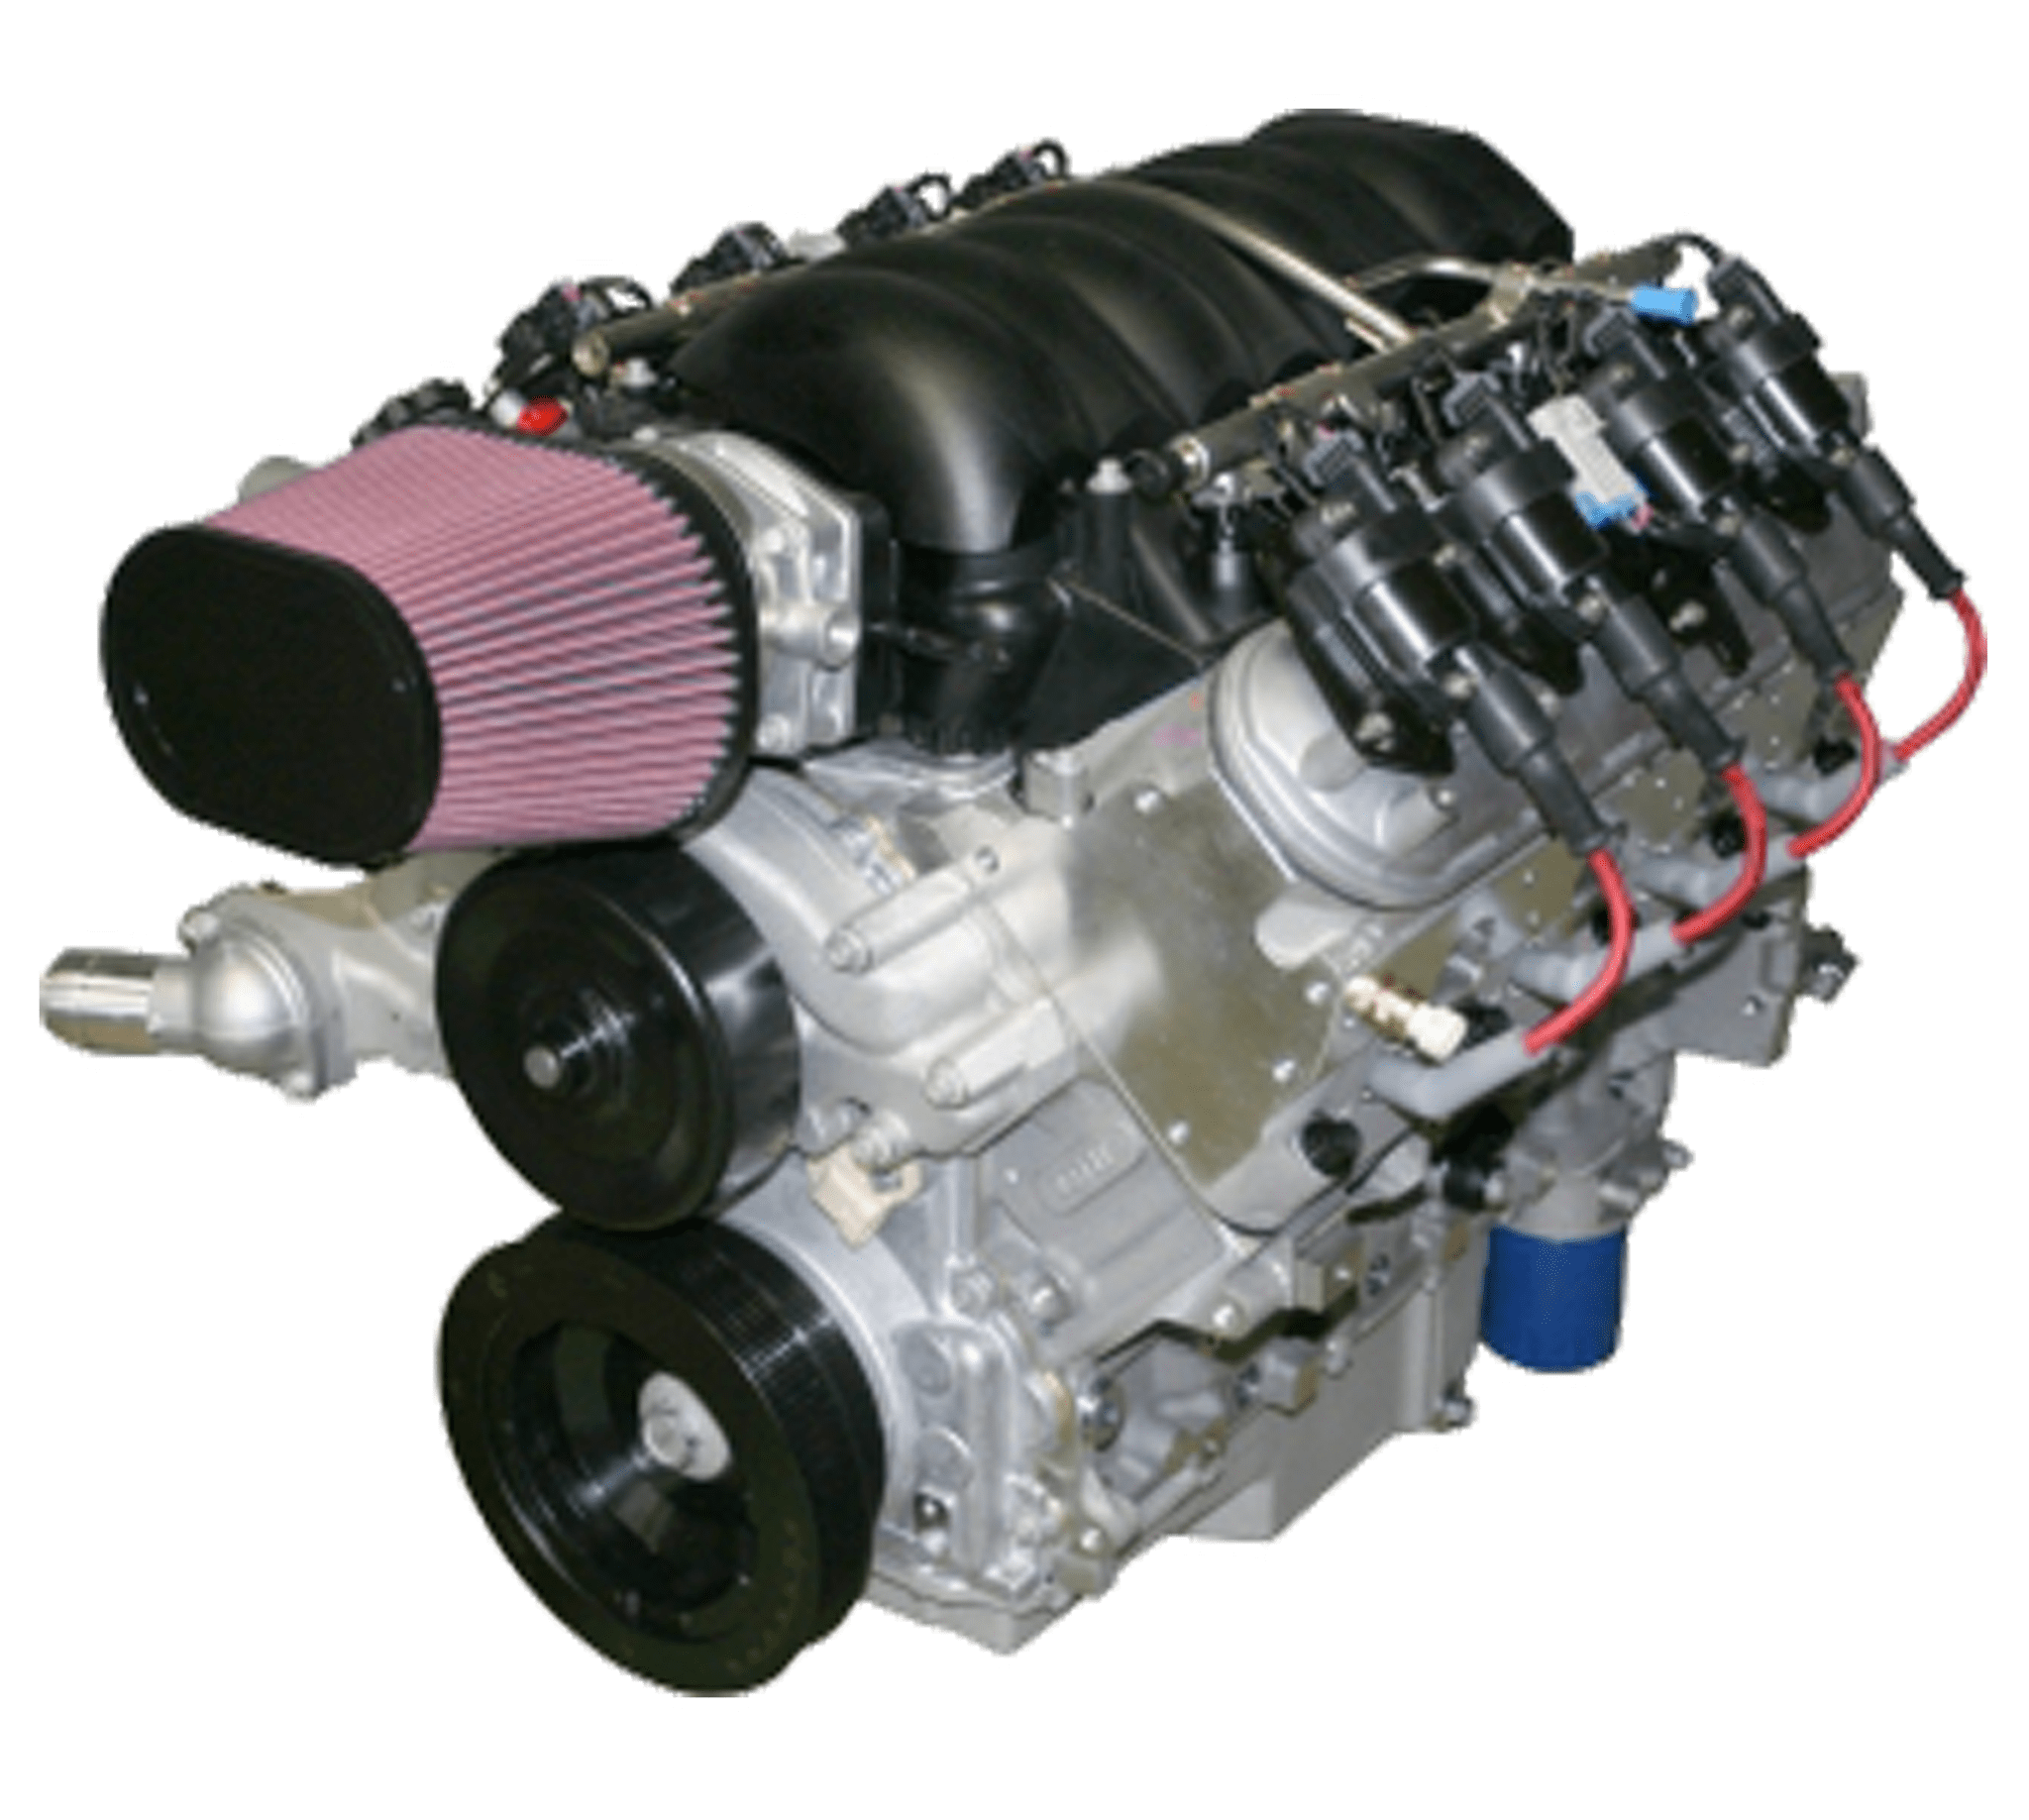 Лс 3. Мотор GM ls3. Мотор Шевроле ls3. V8 ls3 GM Perfomance. Chevrolet ls2 engine.